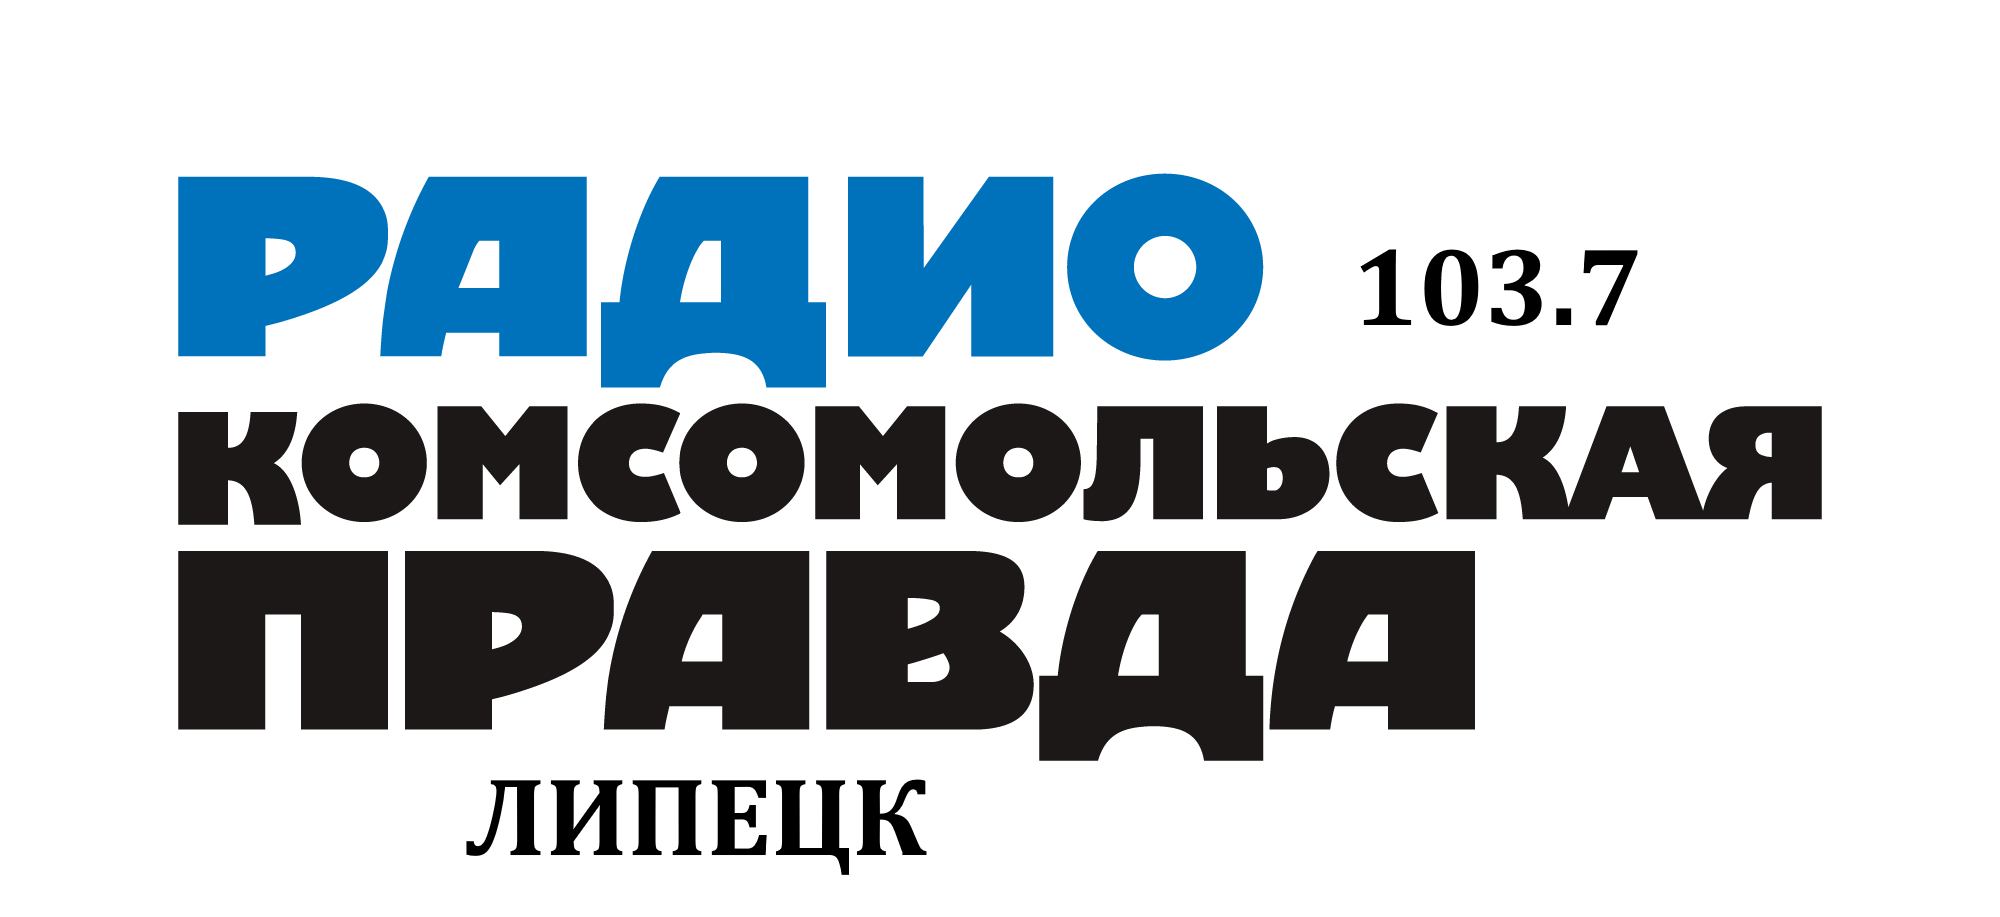 Раземщение рекламы  Комсомольская правда 103.7 FM, г. Липецк